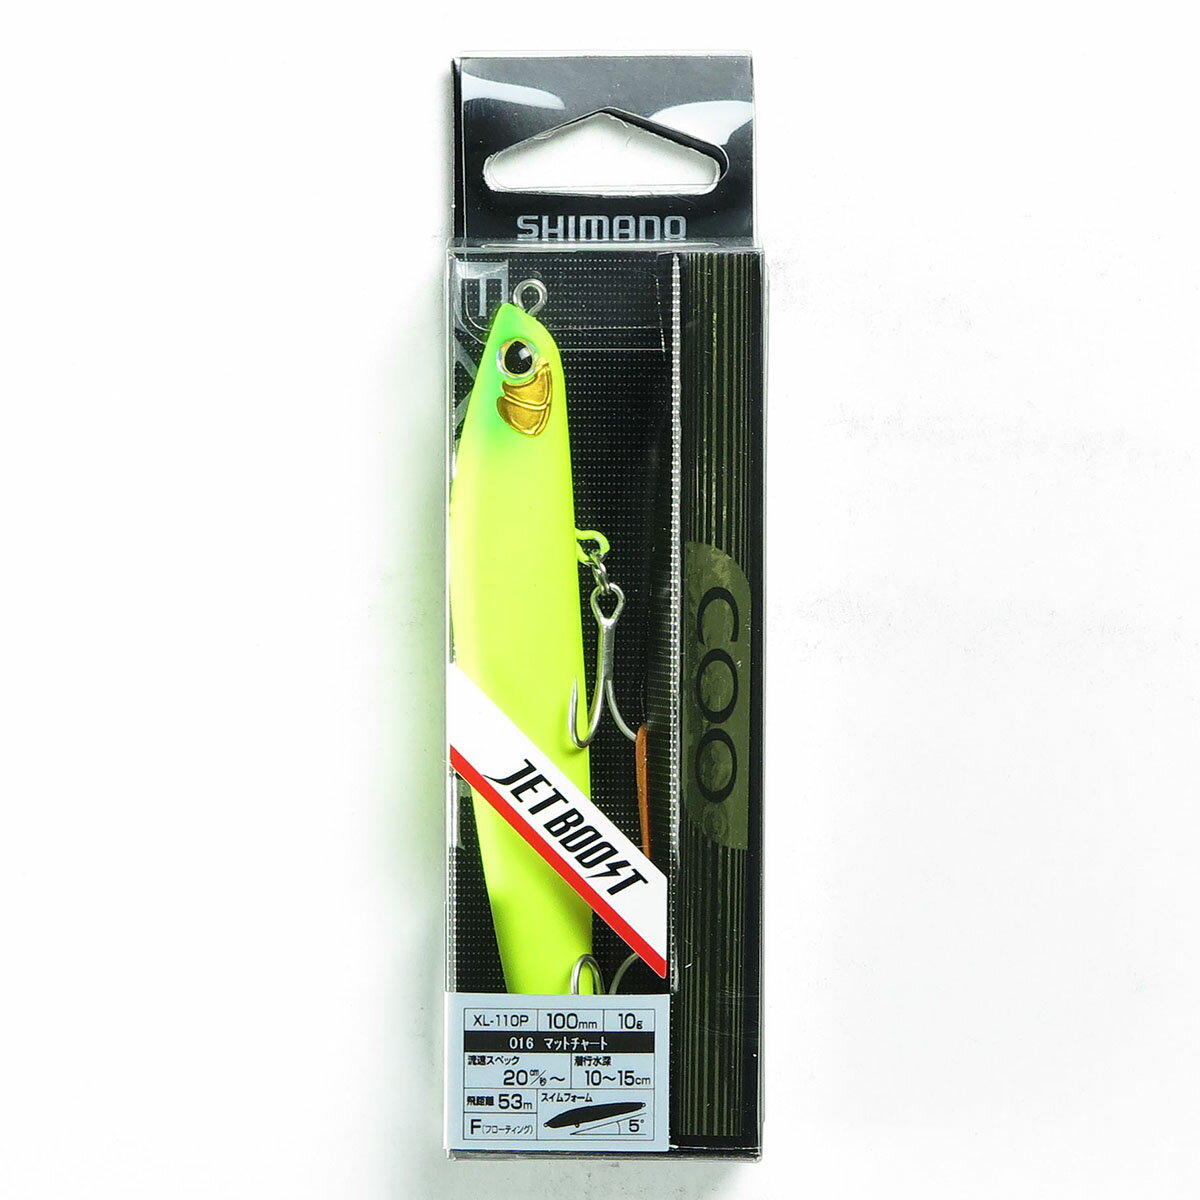 「 シマノ SHIMANO エクスセンス クー XL-110P マットチャート016 」  釣具 釣り具 釣り用品